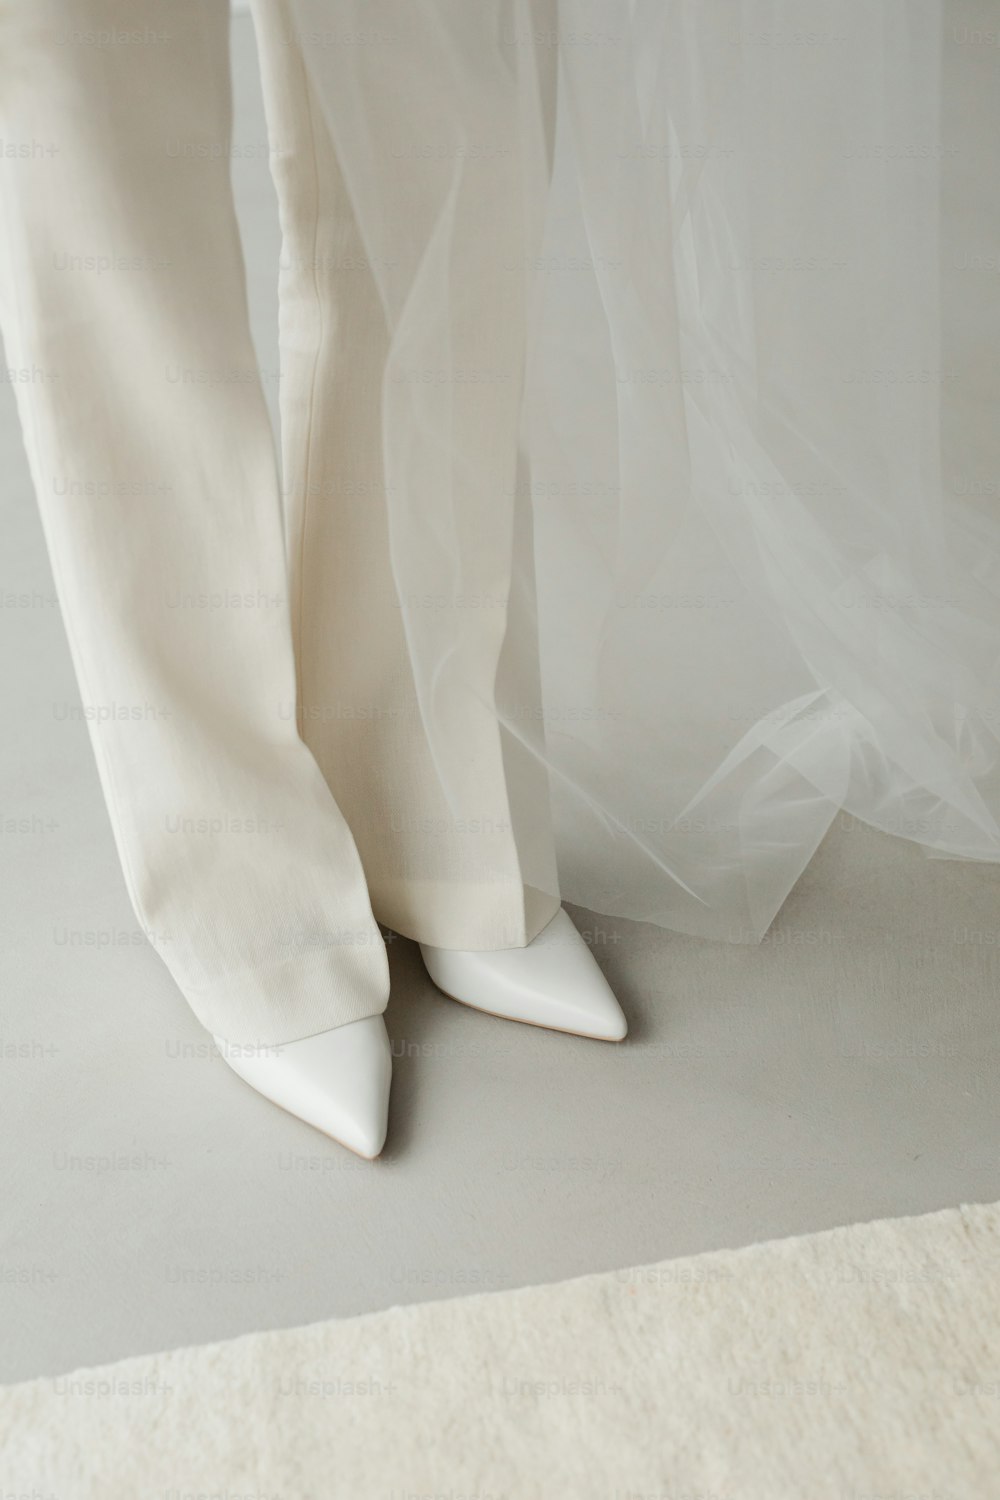 um par de sapatos brancos e um lençol branco